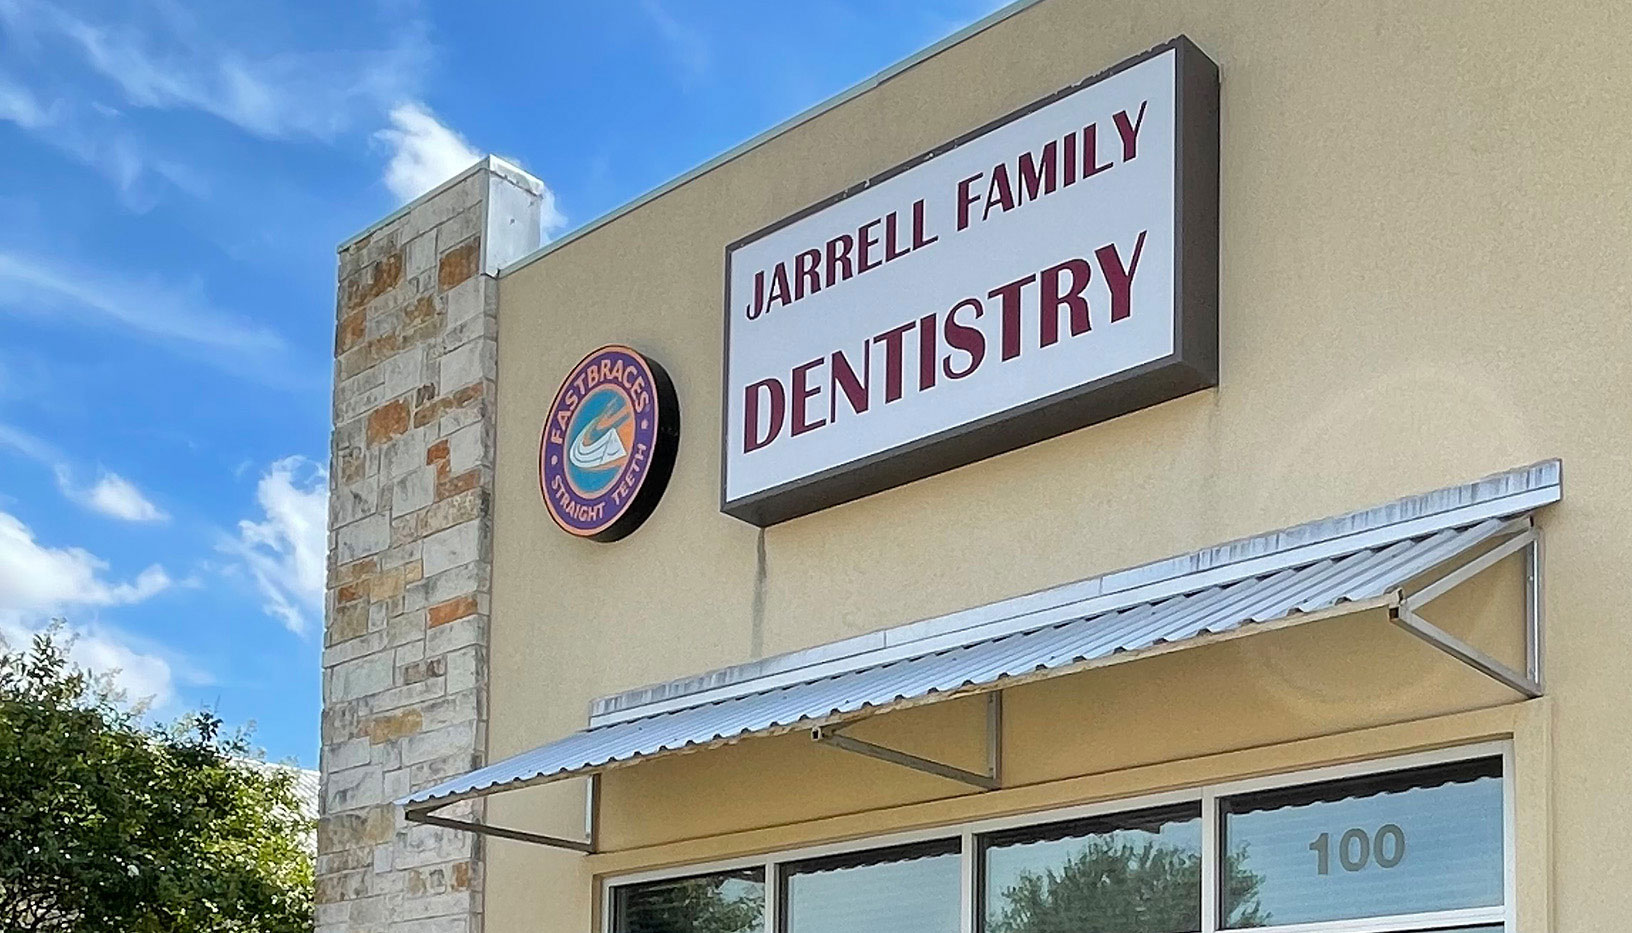 Jarrell Family Dentistry 181 Town Center Blvd # 100, Jarrell Texas 76537